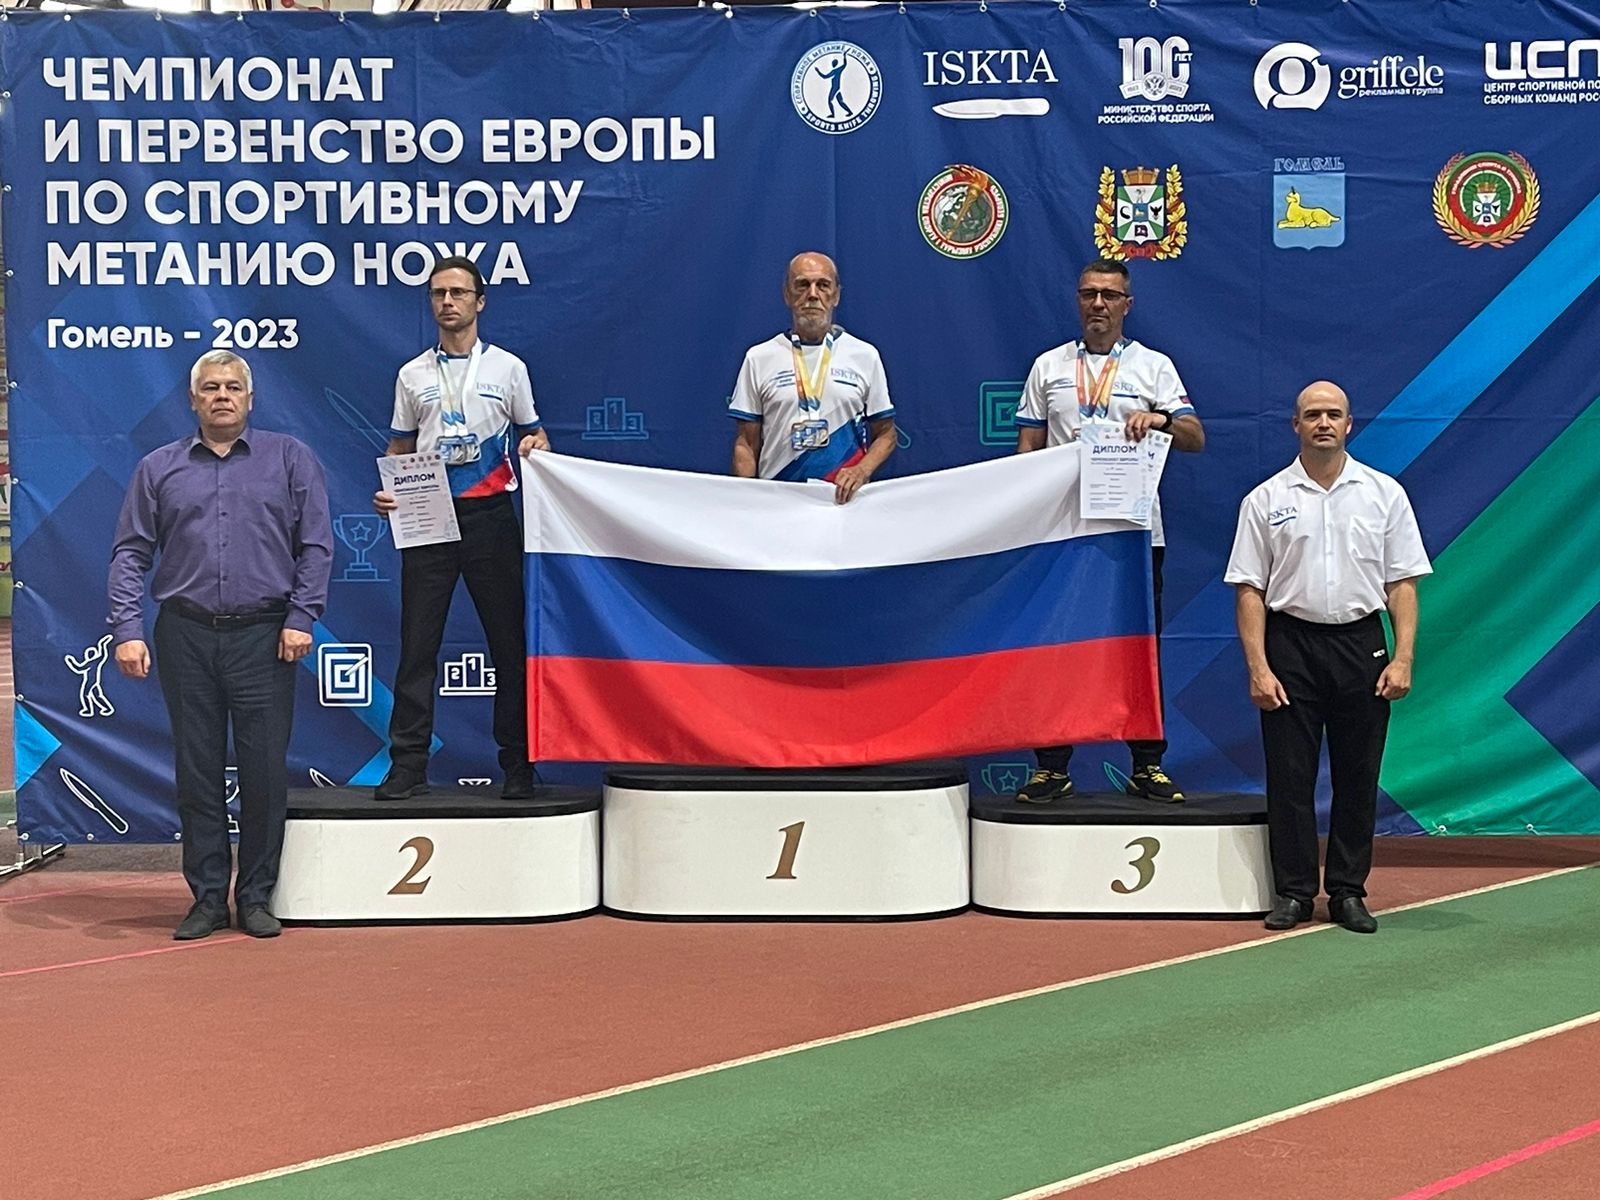 Чемпионат и первенство Европы по спортивному метанию ножа в Гомеле завершился триумфом российской сборной